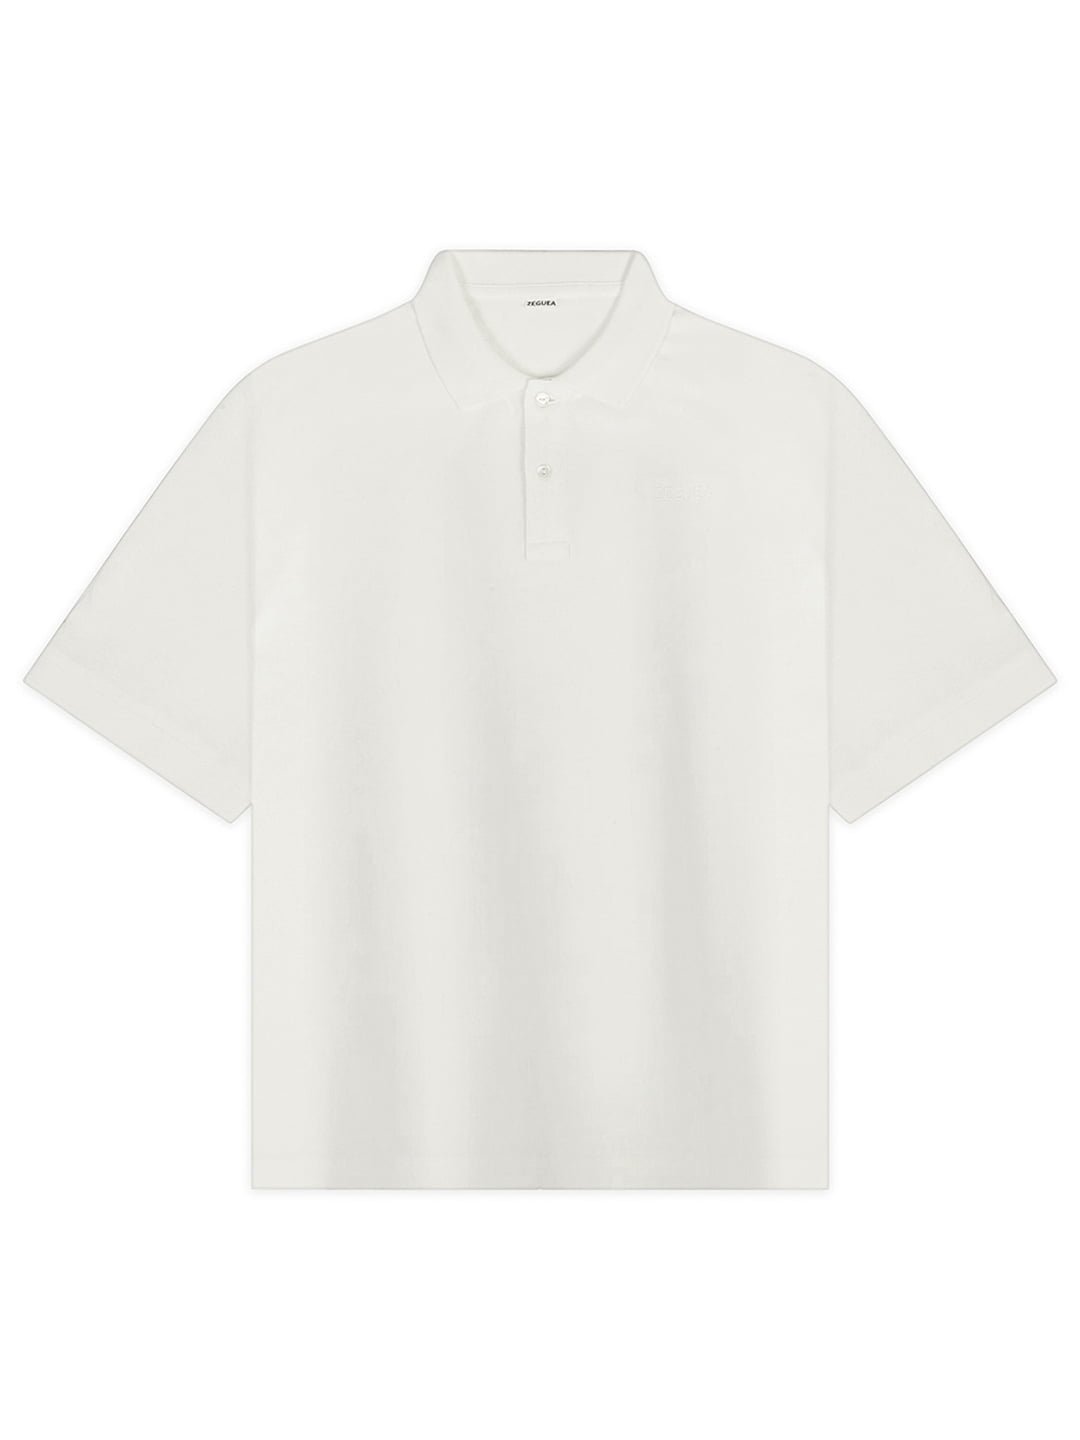 Undyed Tshirt | Certified Organic Cotton Tshirt | Fair Trade Tshirt